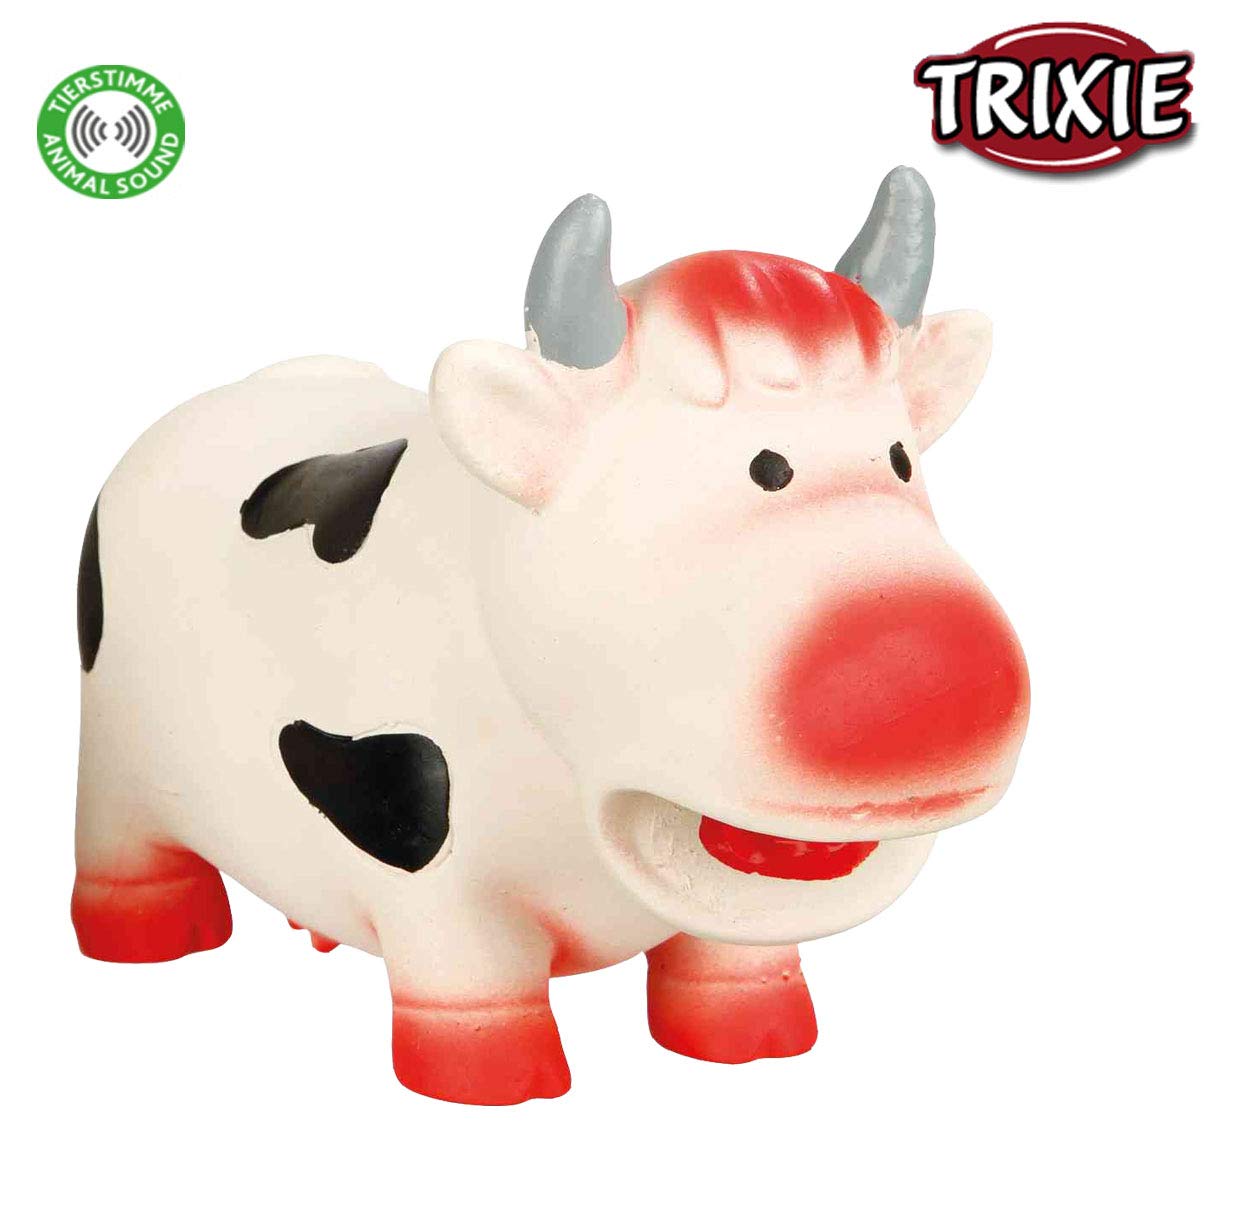 TRIXIE Cow Latex Dog Toy original Animal Sound 19cm